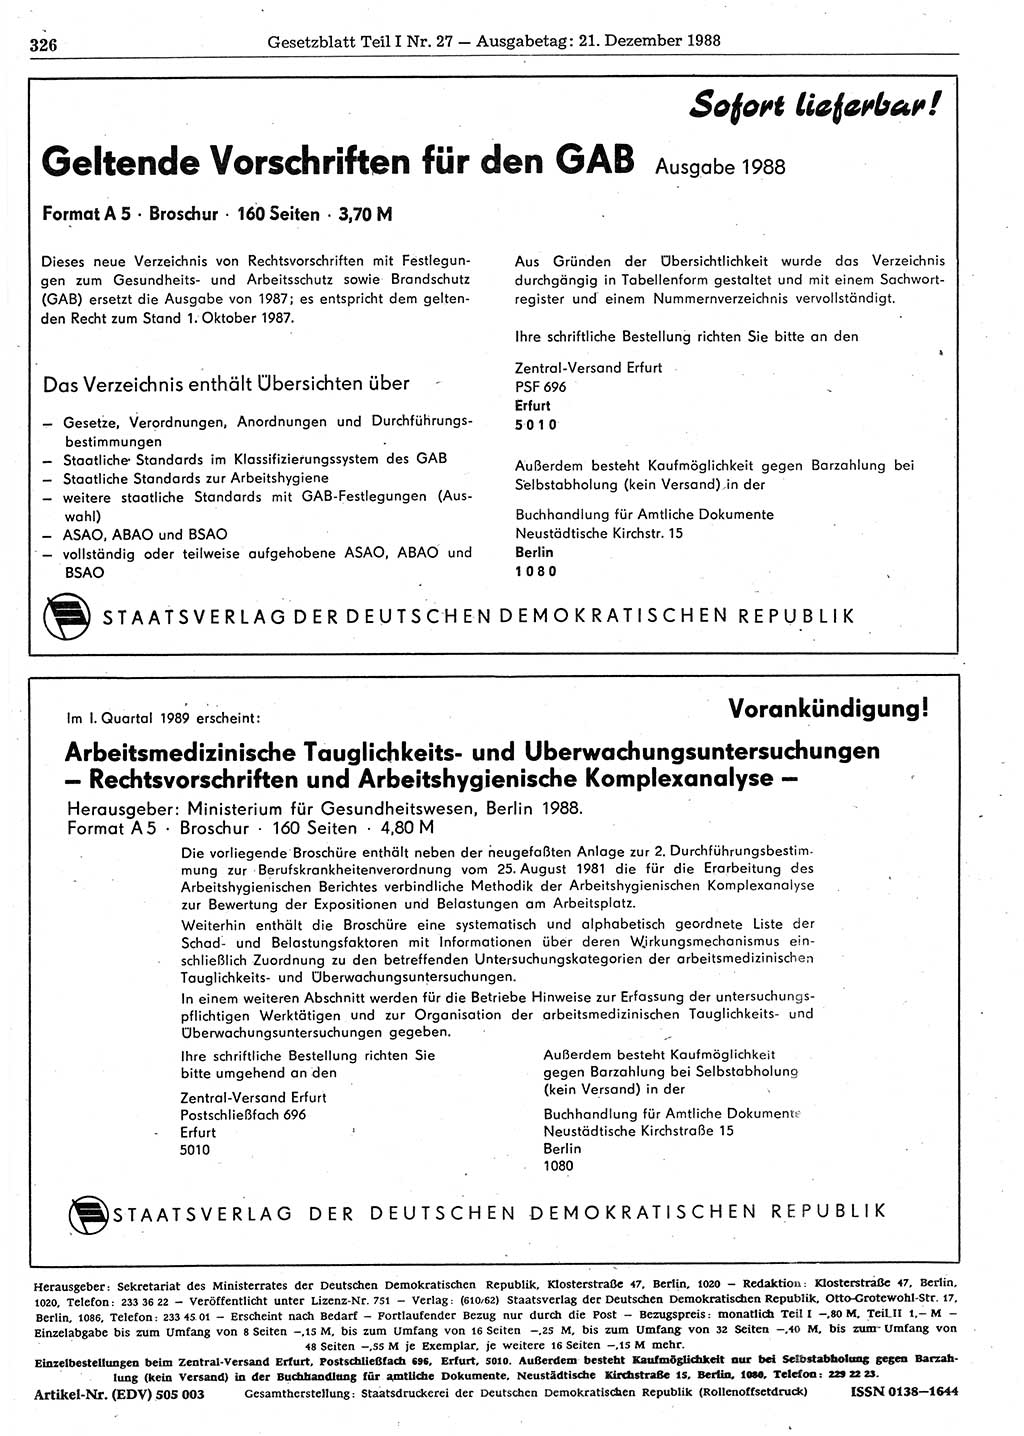 Gesetzblatt (GBl.) der Deutschen Demokratischen Republik (DDR) Teil Ⅰ 1988, Seite 326 (GBl. DDR Ⅰ 1988, S. 326)